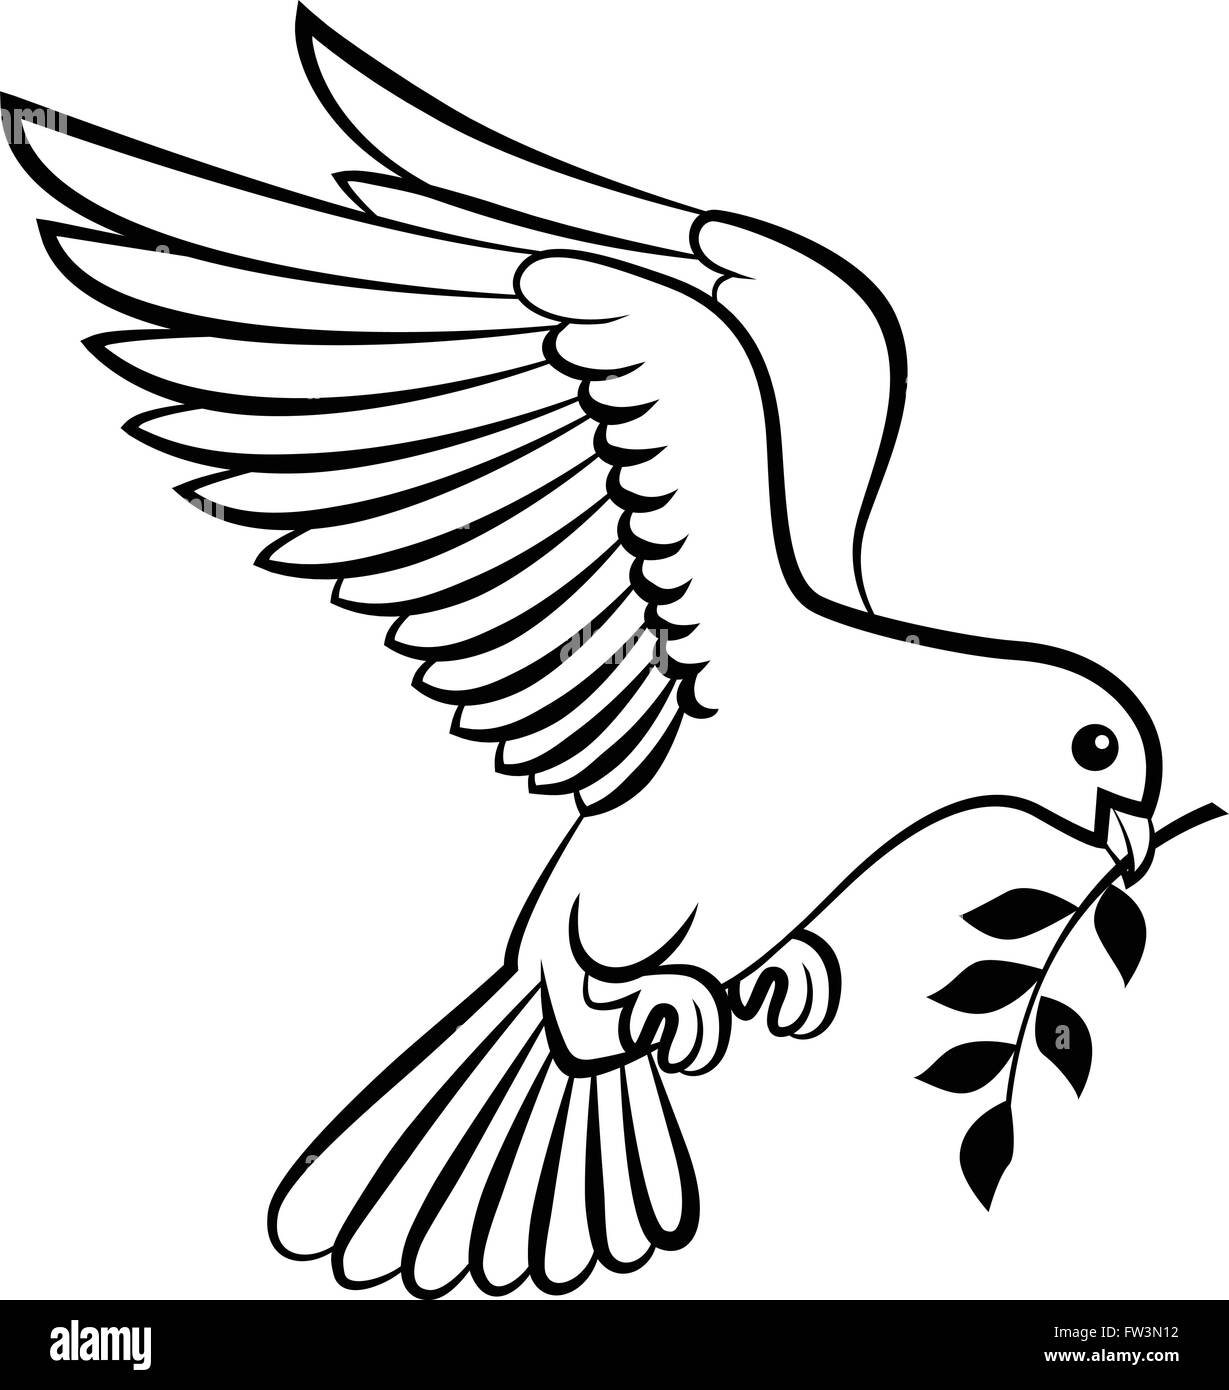 Logo oiseaux colombe pour la paix et le concept de design de mariage Illustration de Vecteur